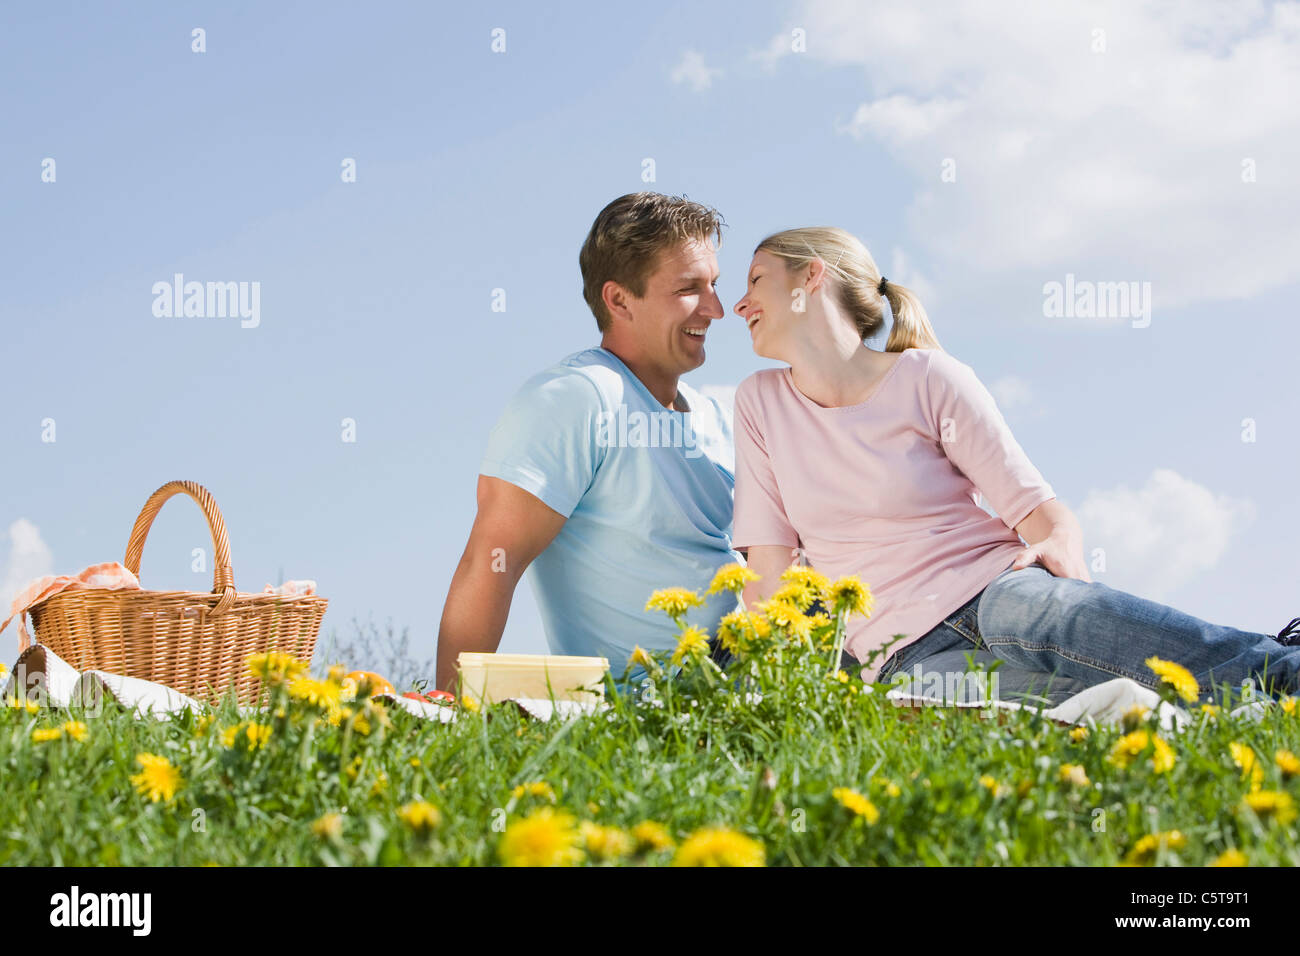 Deutschland, Bayern, München, junges Paar mit Picknick, Lächeln, Porträt Stockfoto